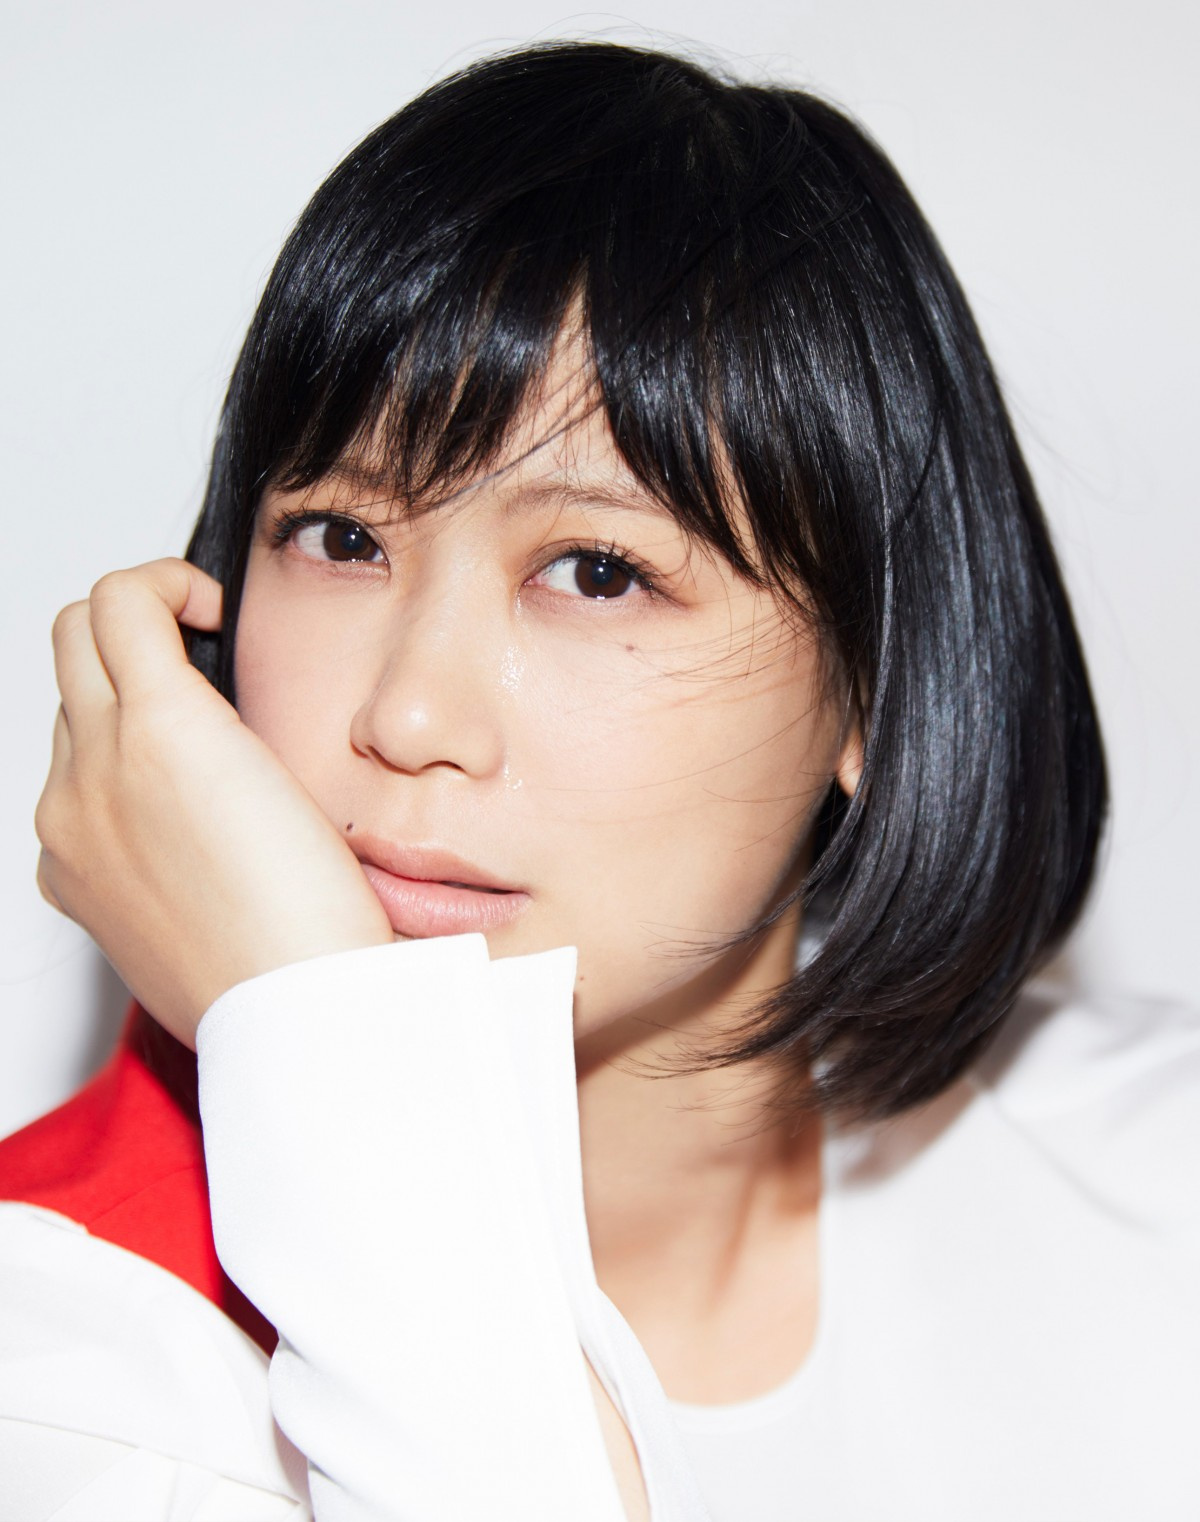 絢香 28年前の 5歳歯抜け 写真公開 面影ある かわいい の声 Oricon News